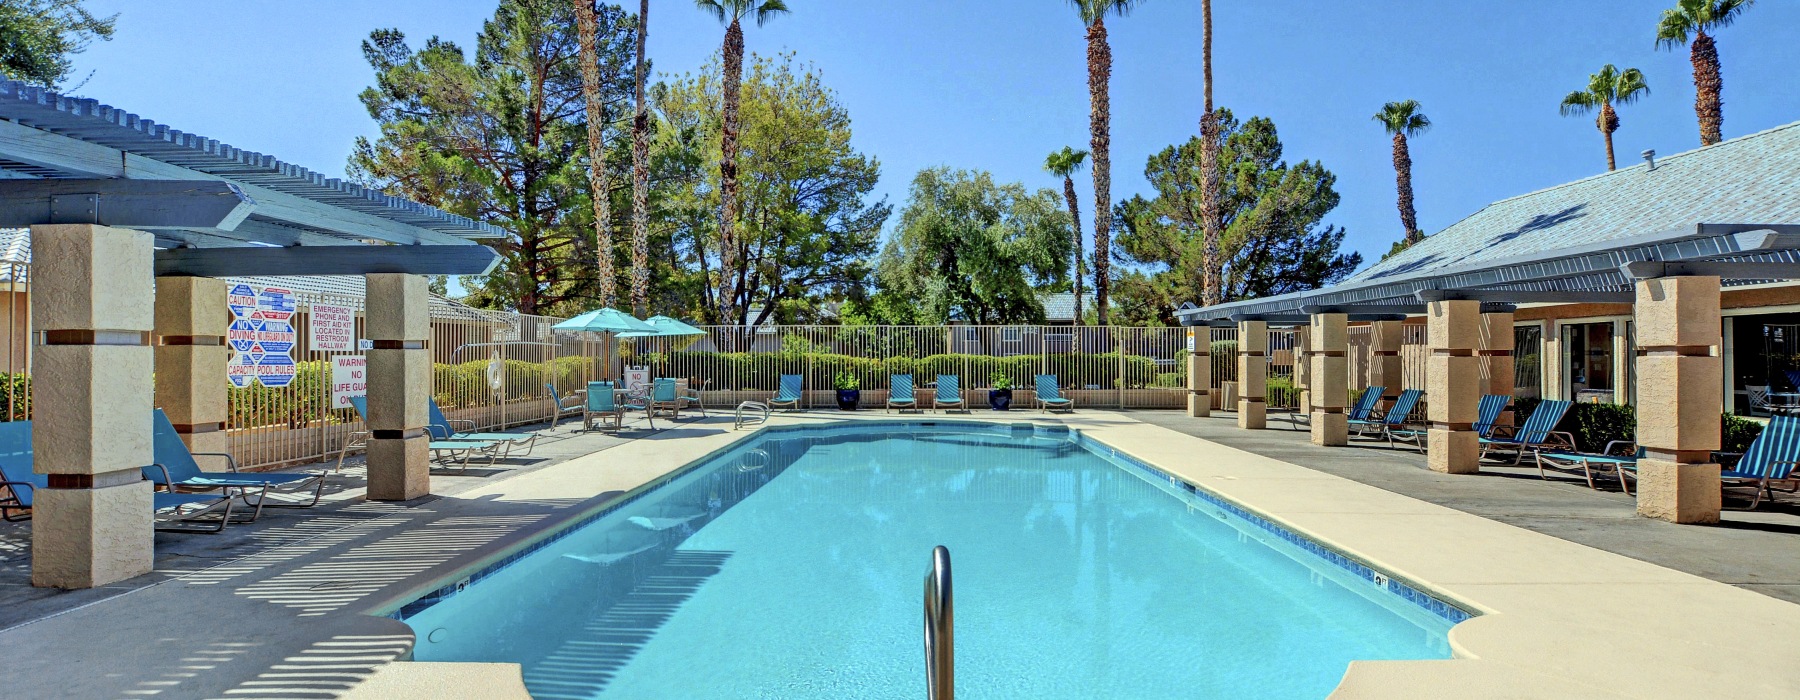 Pool at Rancho Mirage 